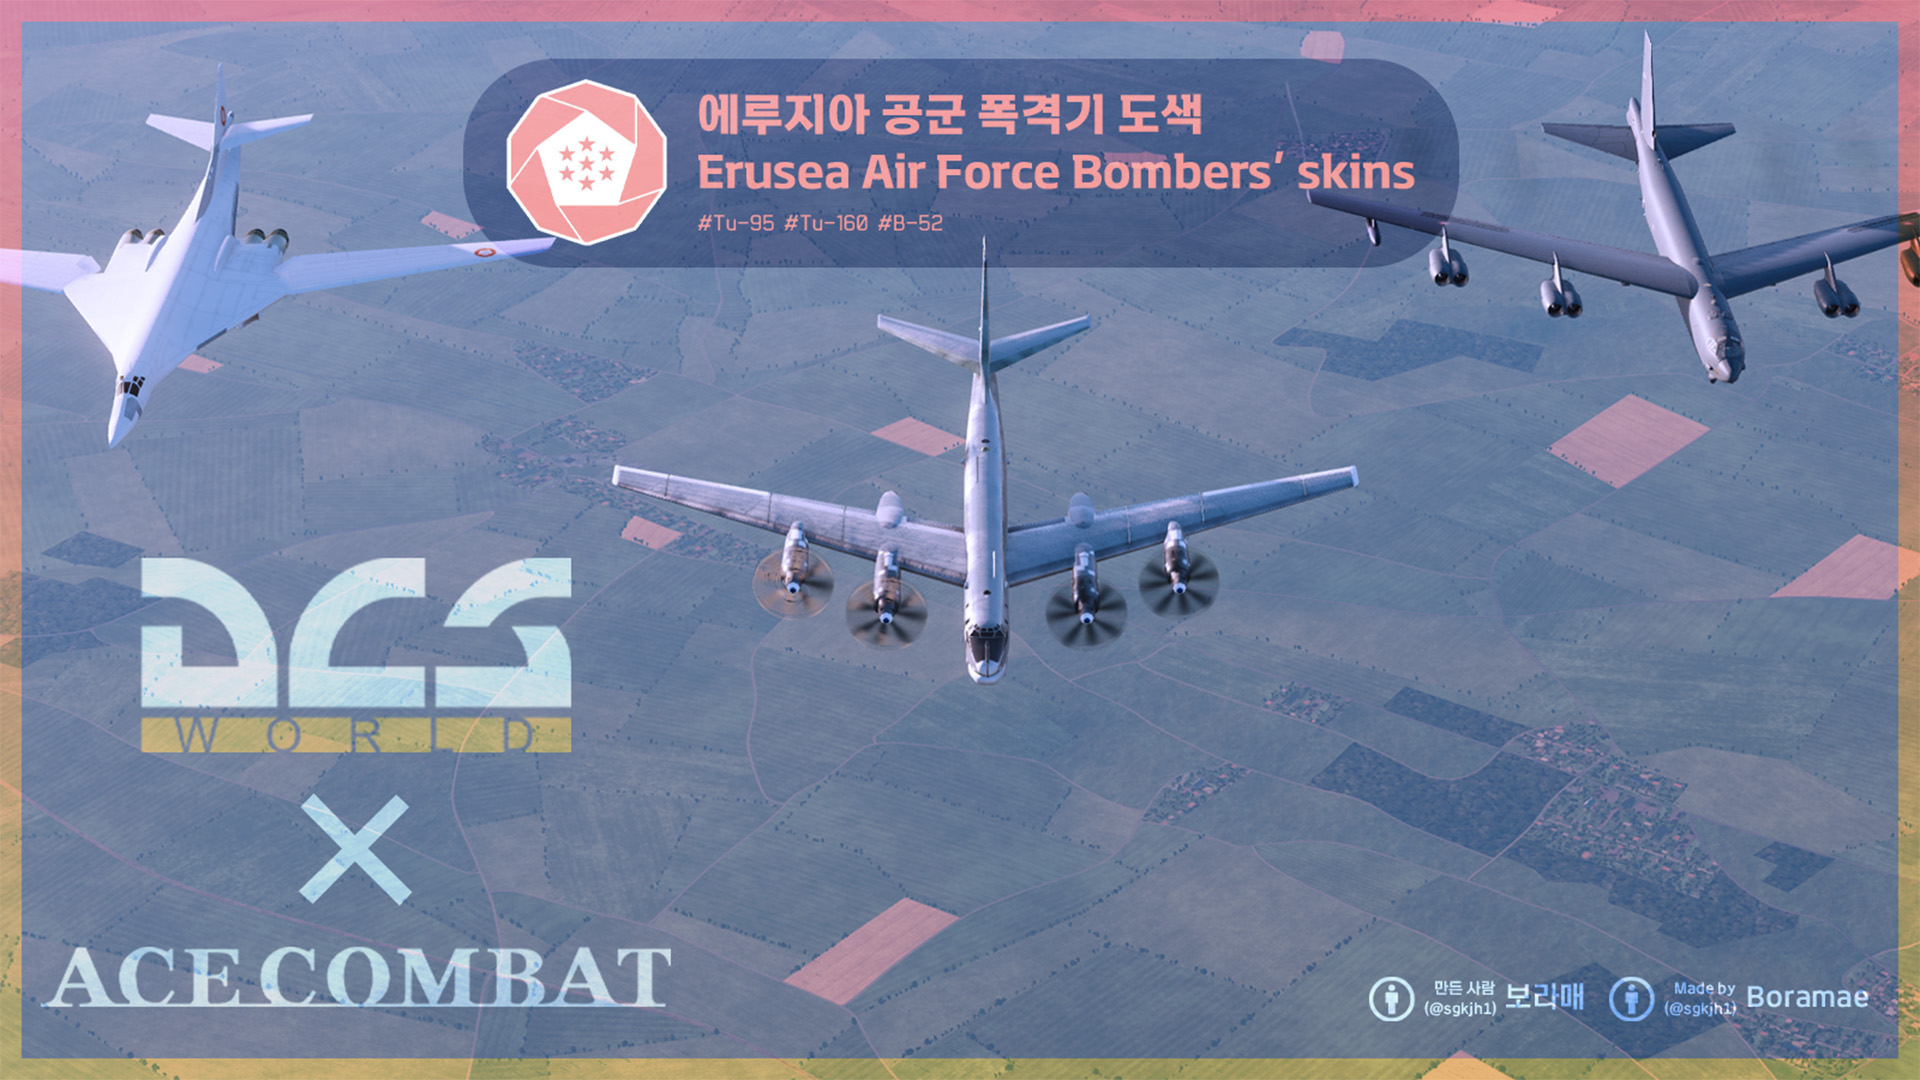 Ace Combat - Erusea Air Force Bombers Skins for Tu-95MS, Tu-160, B-52H